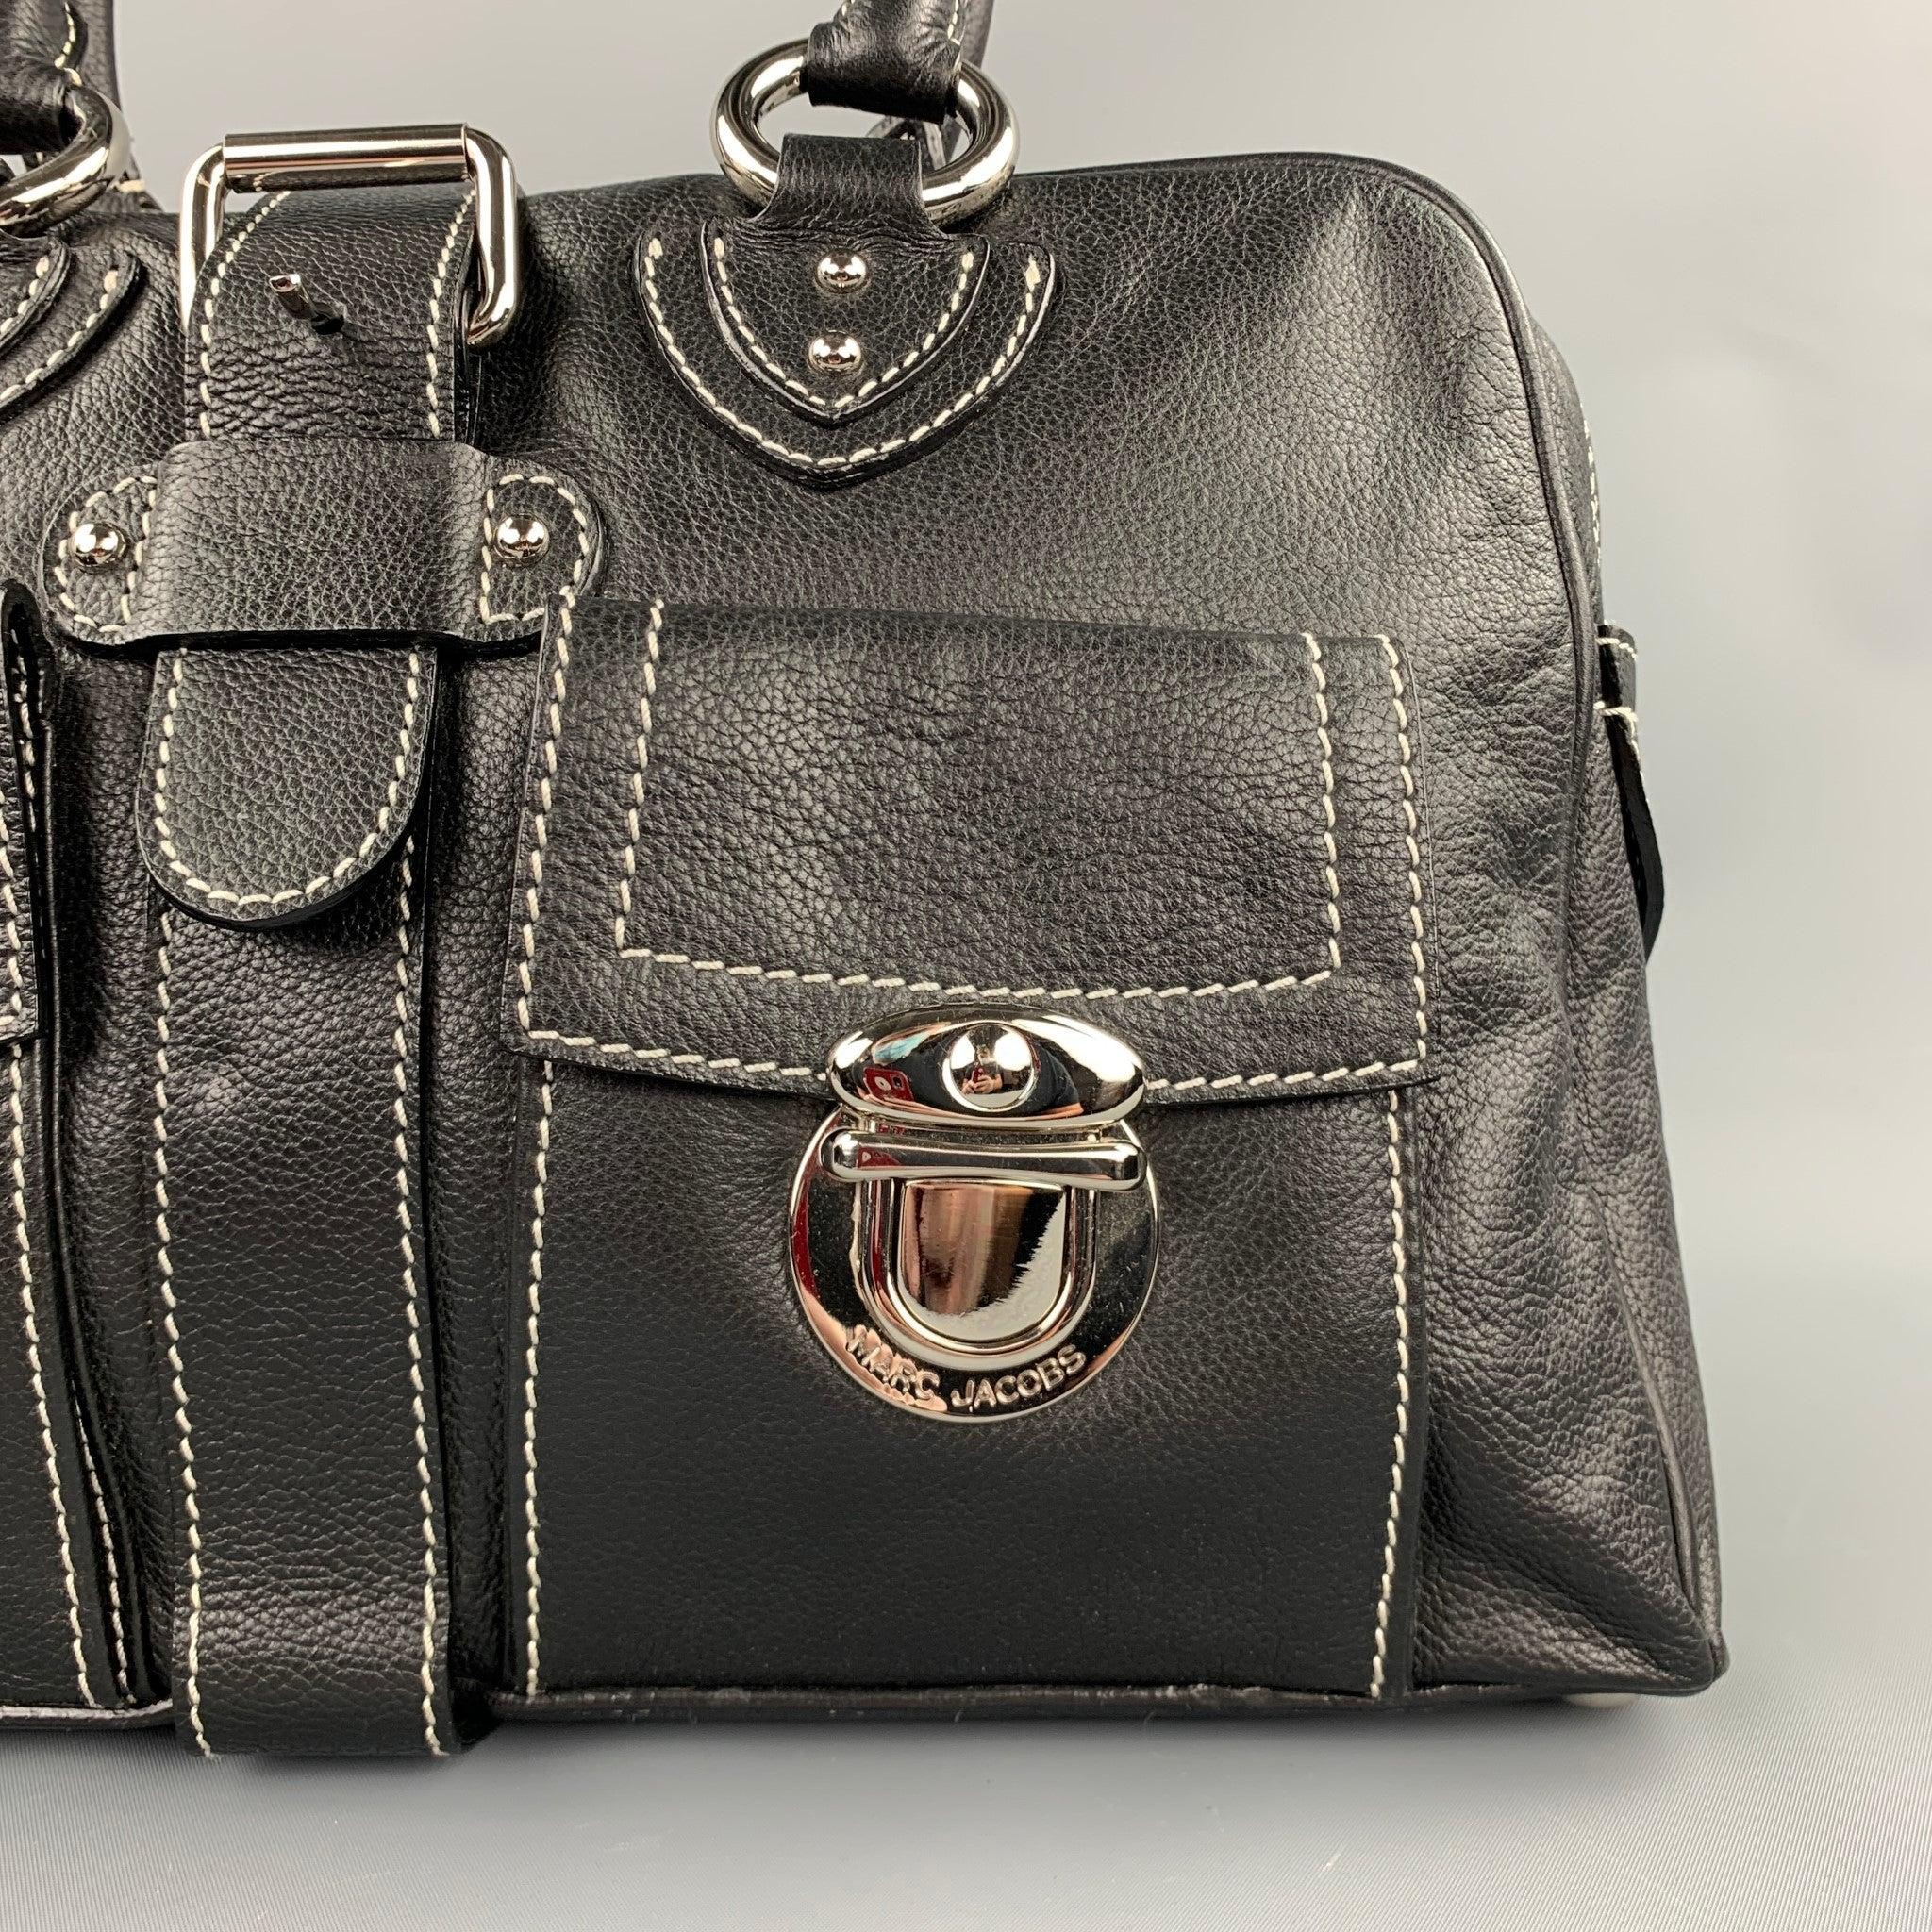 Le sac à main MARC JACOBS est en cuir noir avec des surpiqûres contrastées, des poches avant, des ferrures argentées, des fentes intérieures et une fermeture à glissière. Fabriqué en Italie.
Etat d'occasion. 

Mesures : 
  Longueur : 15 pouces